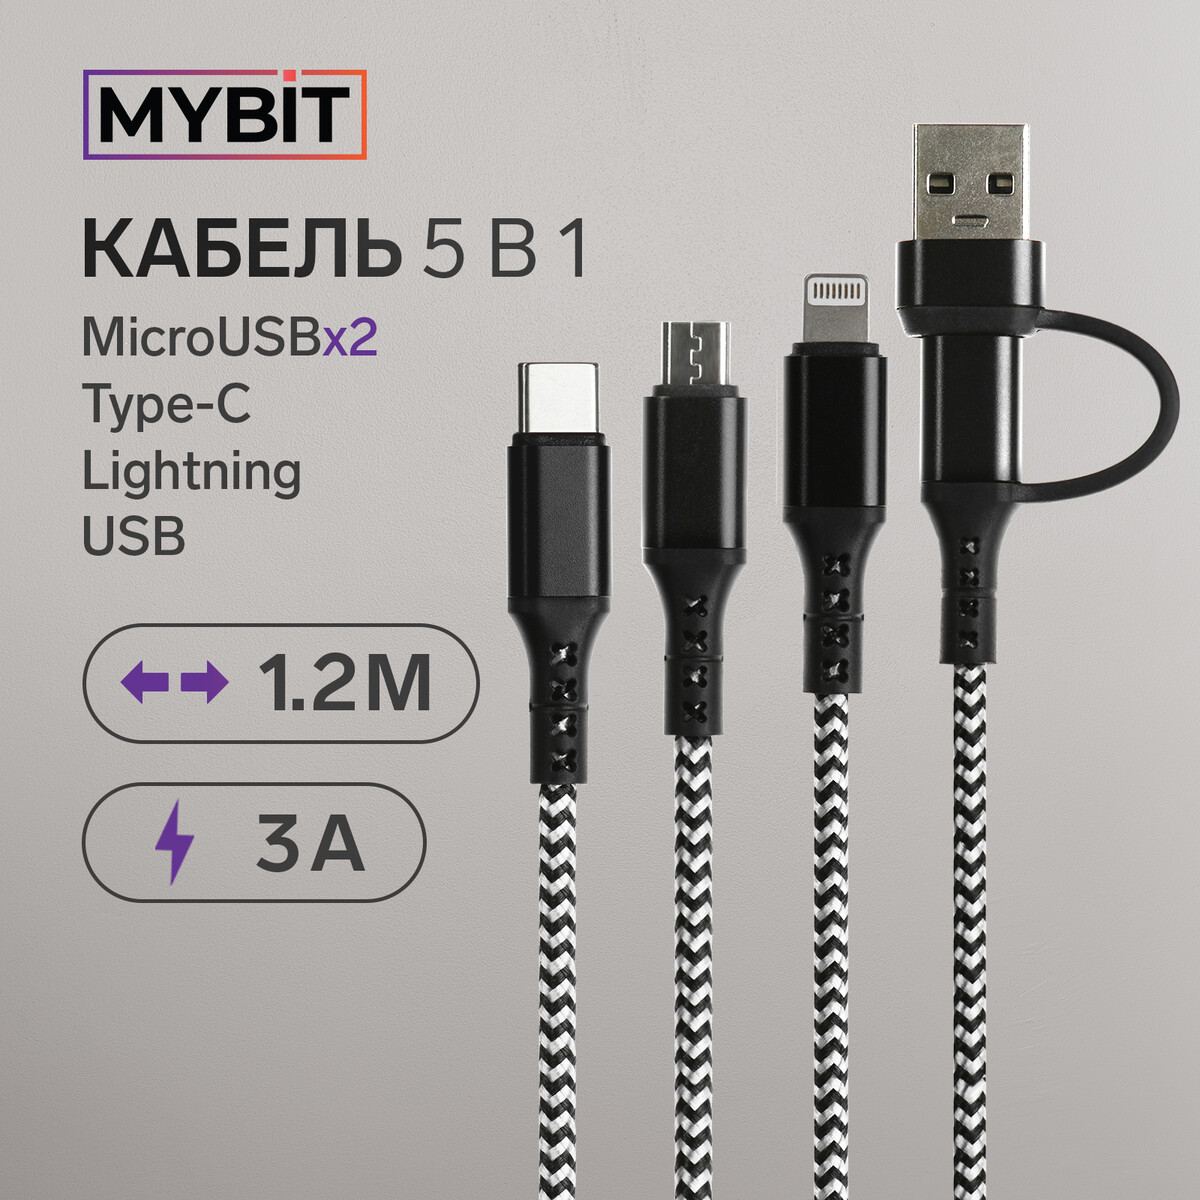 Кабель 5 в 1 mybit, microusb/type-c/lightning - type-c/usb, 3 а, 1.2 м, только зарядка, черный кабель devia в ассортименте kintone cable set v2 micro usb lightning type c 2 1a 1м